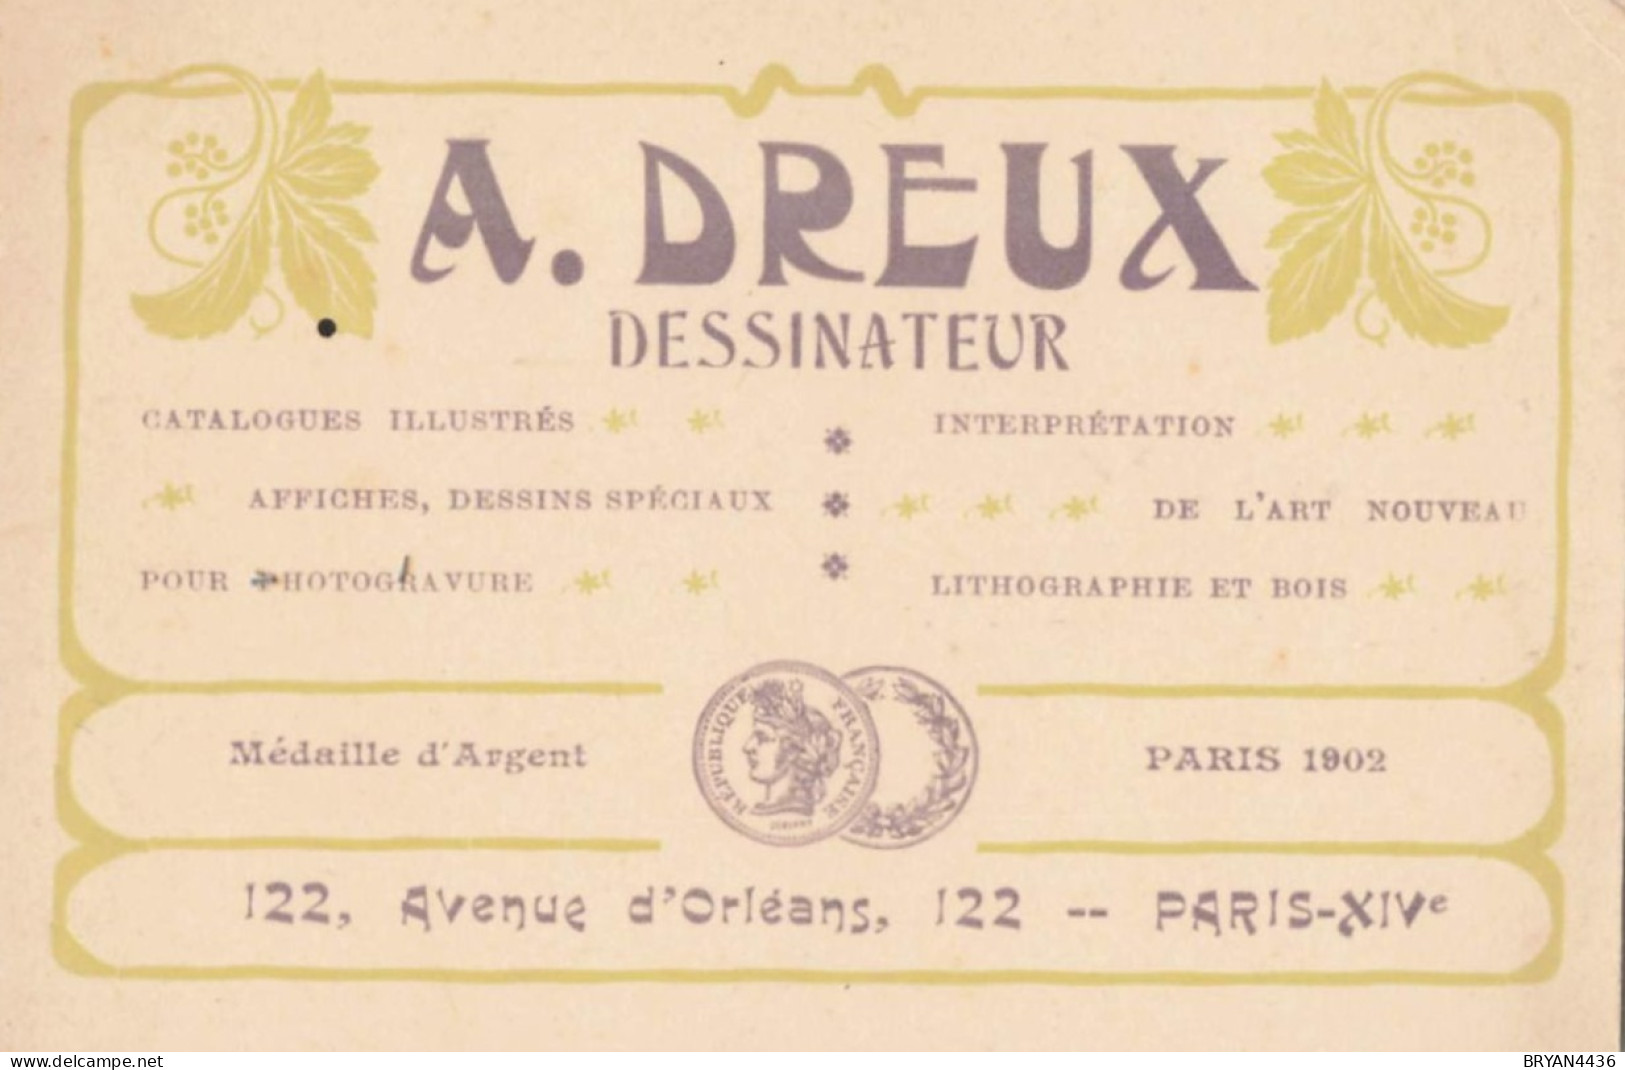 PARIS - 14 ème - DESSINATEUR  - A. DREUX - 122, AVENUE D' ORLEANS - CARTE COMMERCIALE ANCIENNE ART NOUVEAU - (8x12cm) - District 14